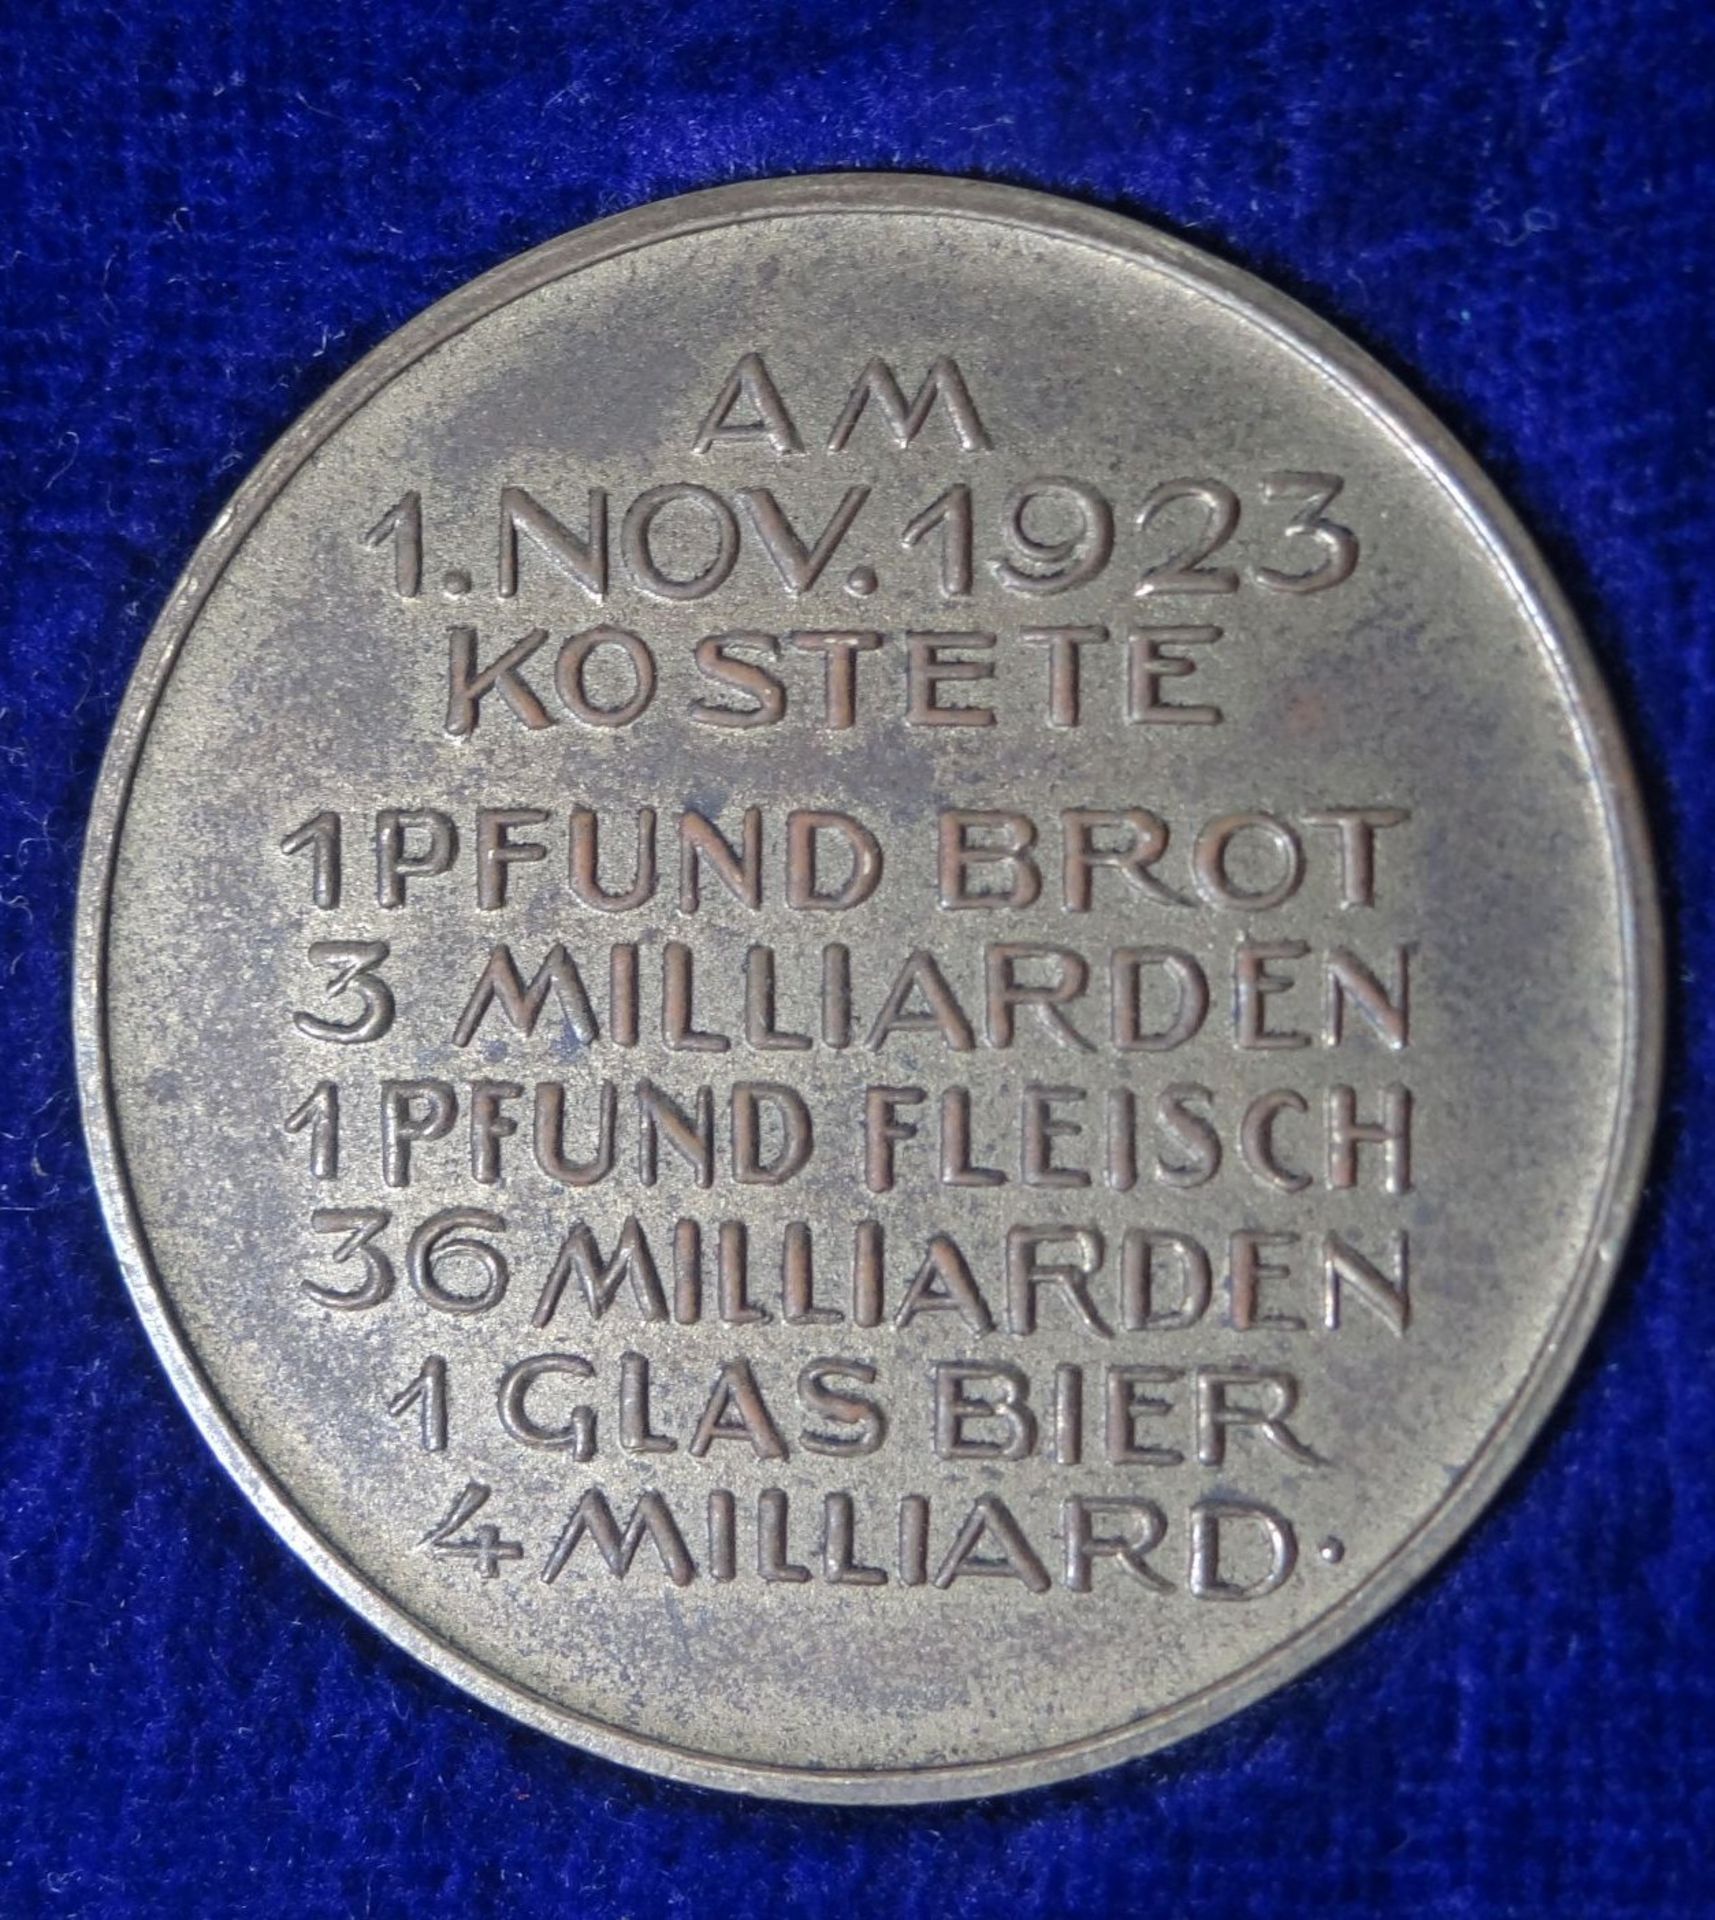 3x Medaillen "Des deutschen Volkes Leidensweg" Inflation 1923, in beschädigter Schachte - Bild 5 aus 7